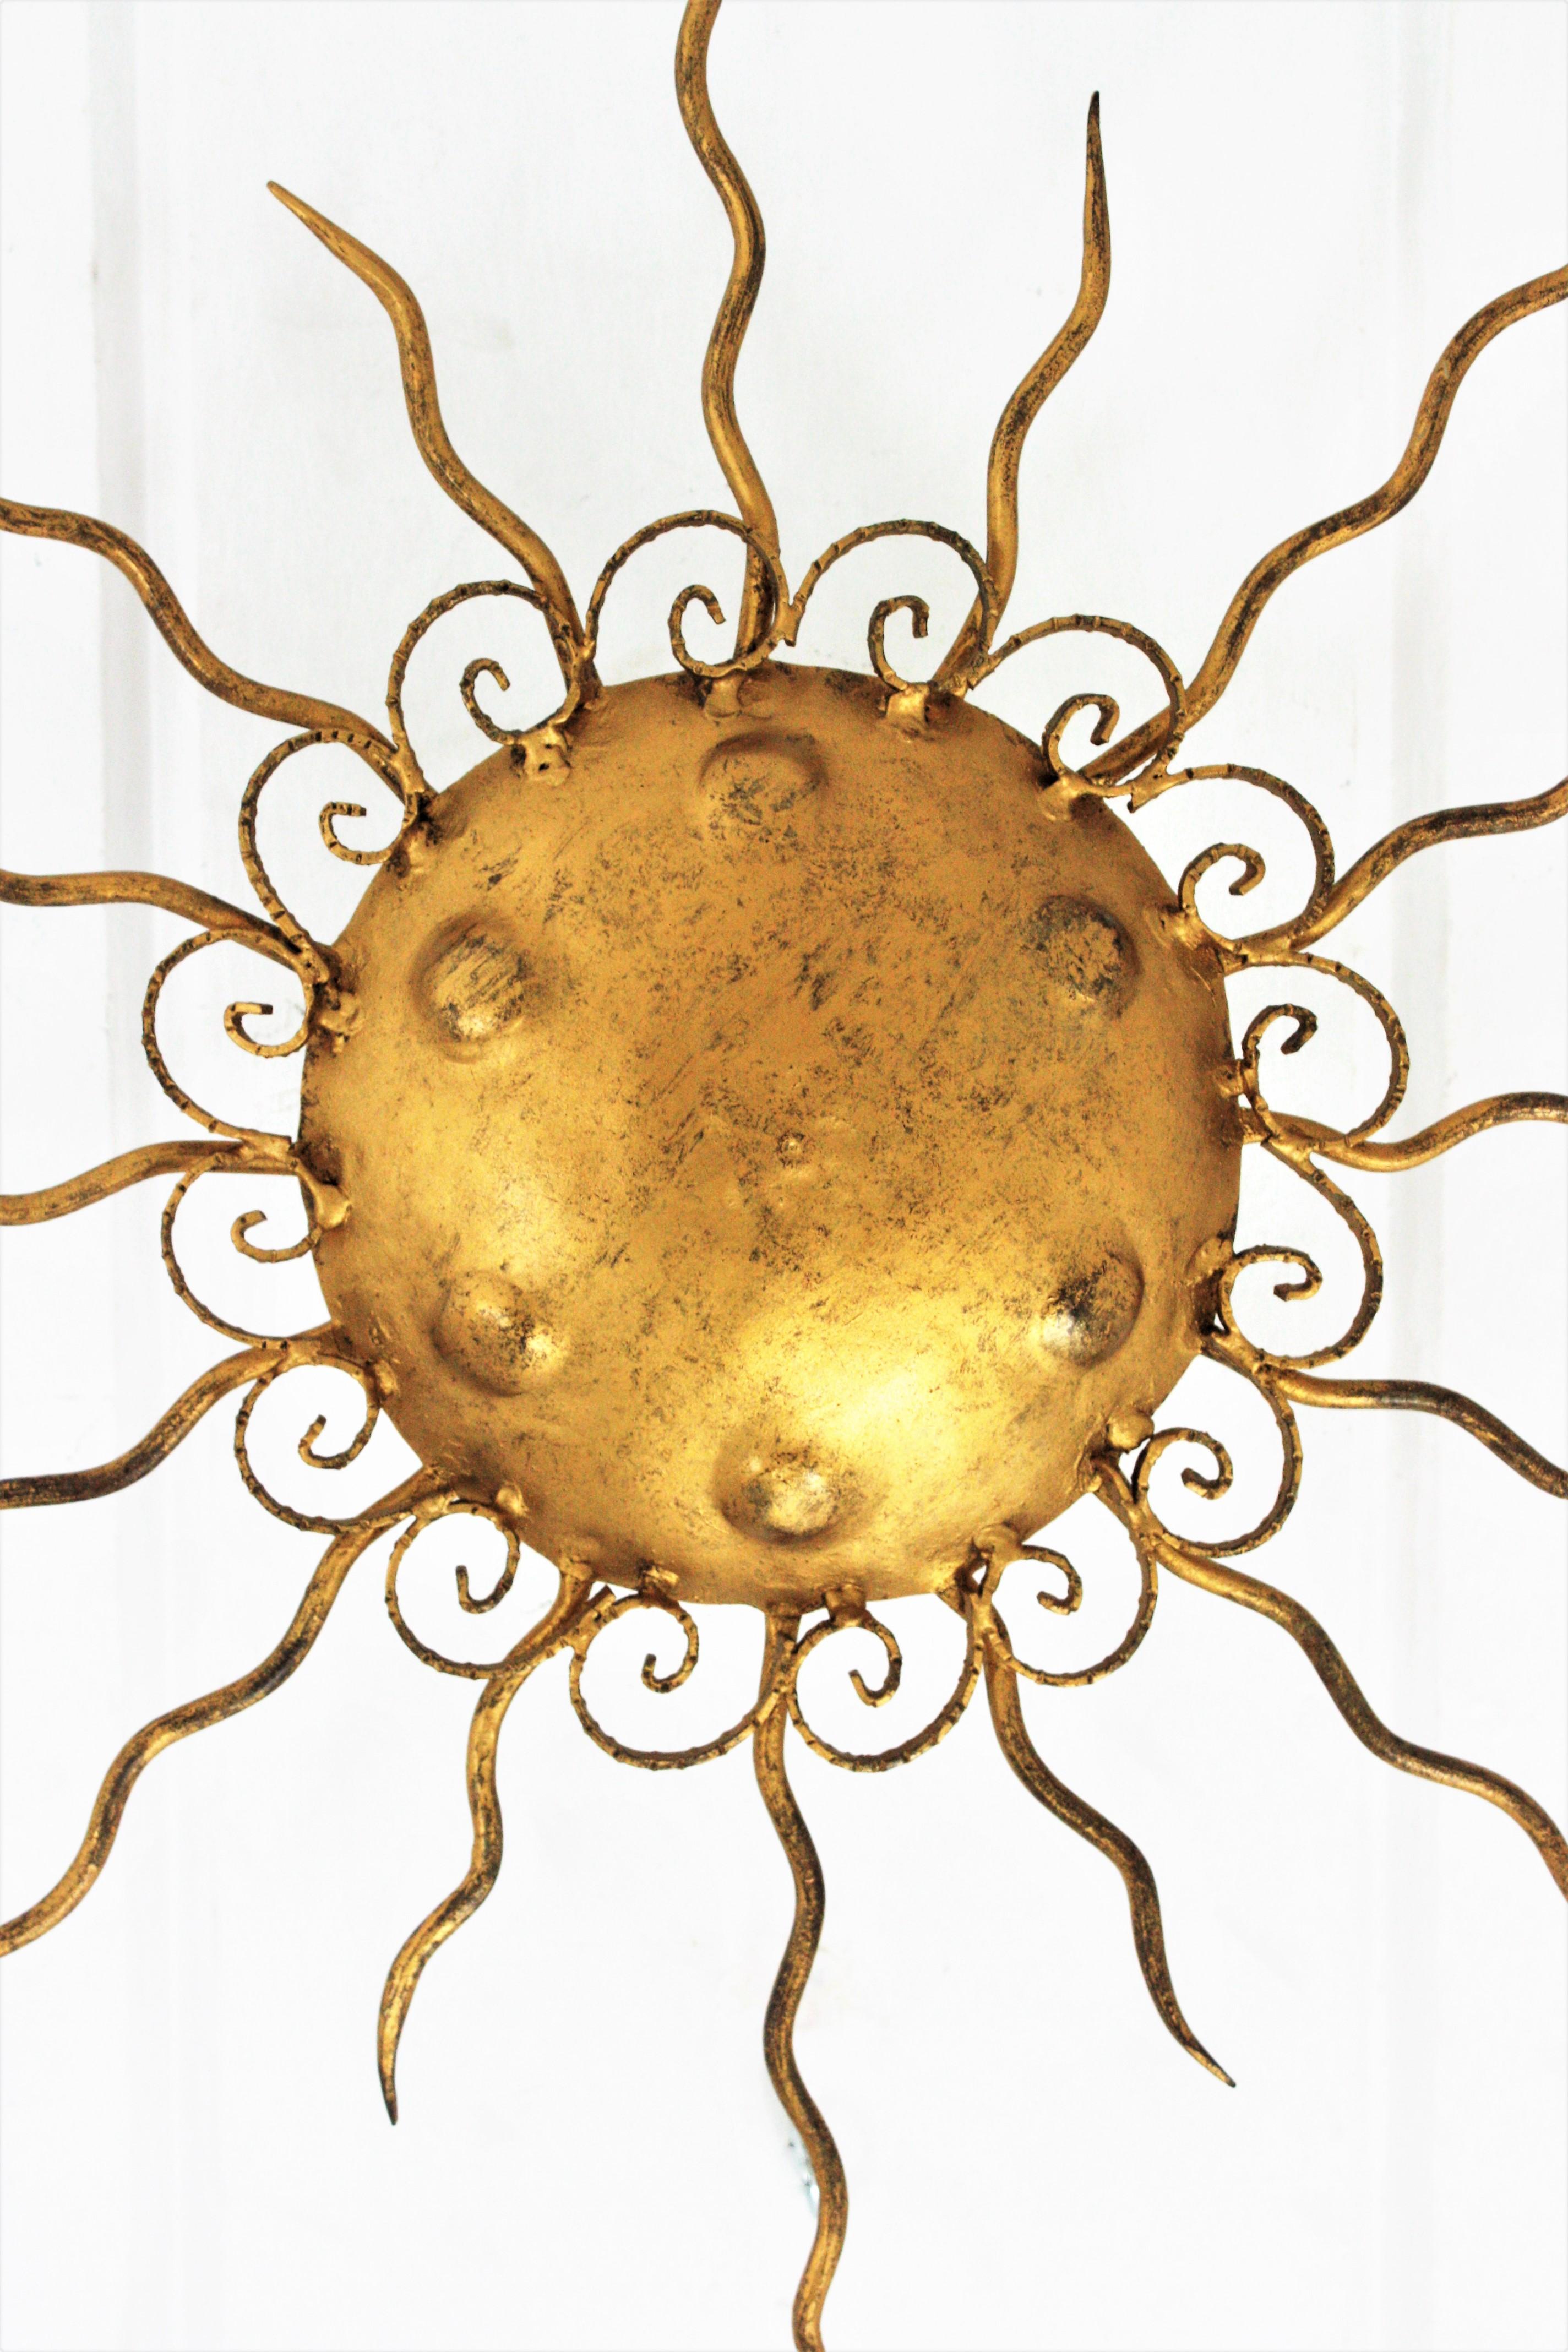 Blattvergoldetes Eisen mit Sonnenschliff, Wandleuchte aus der Zeit des Brutalismus. Spanien, 1950er Jahre.
Reich verziert mit Schnecken, die den zentralen Schirm umgeben, und gravierten Kreisen. 
Schön zu platzieren als Deckenleuchte aber auch als